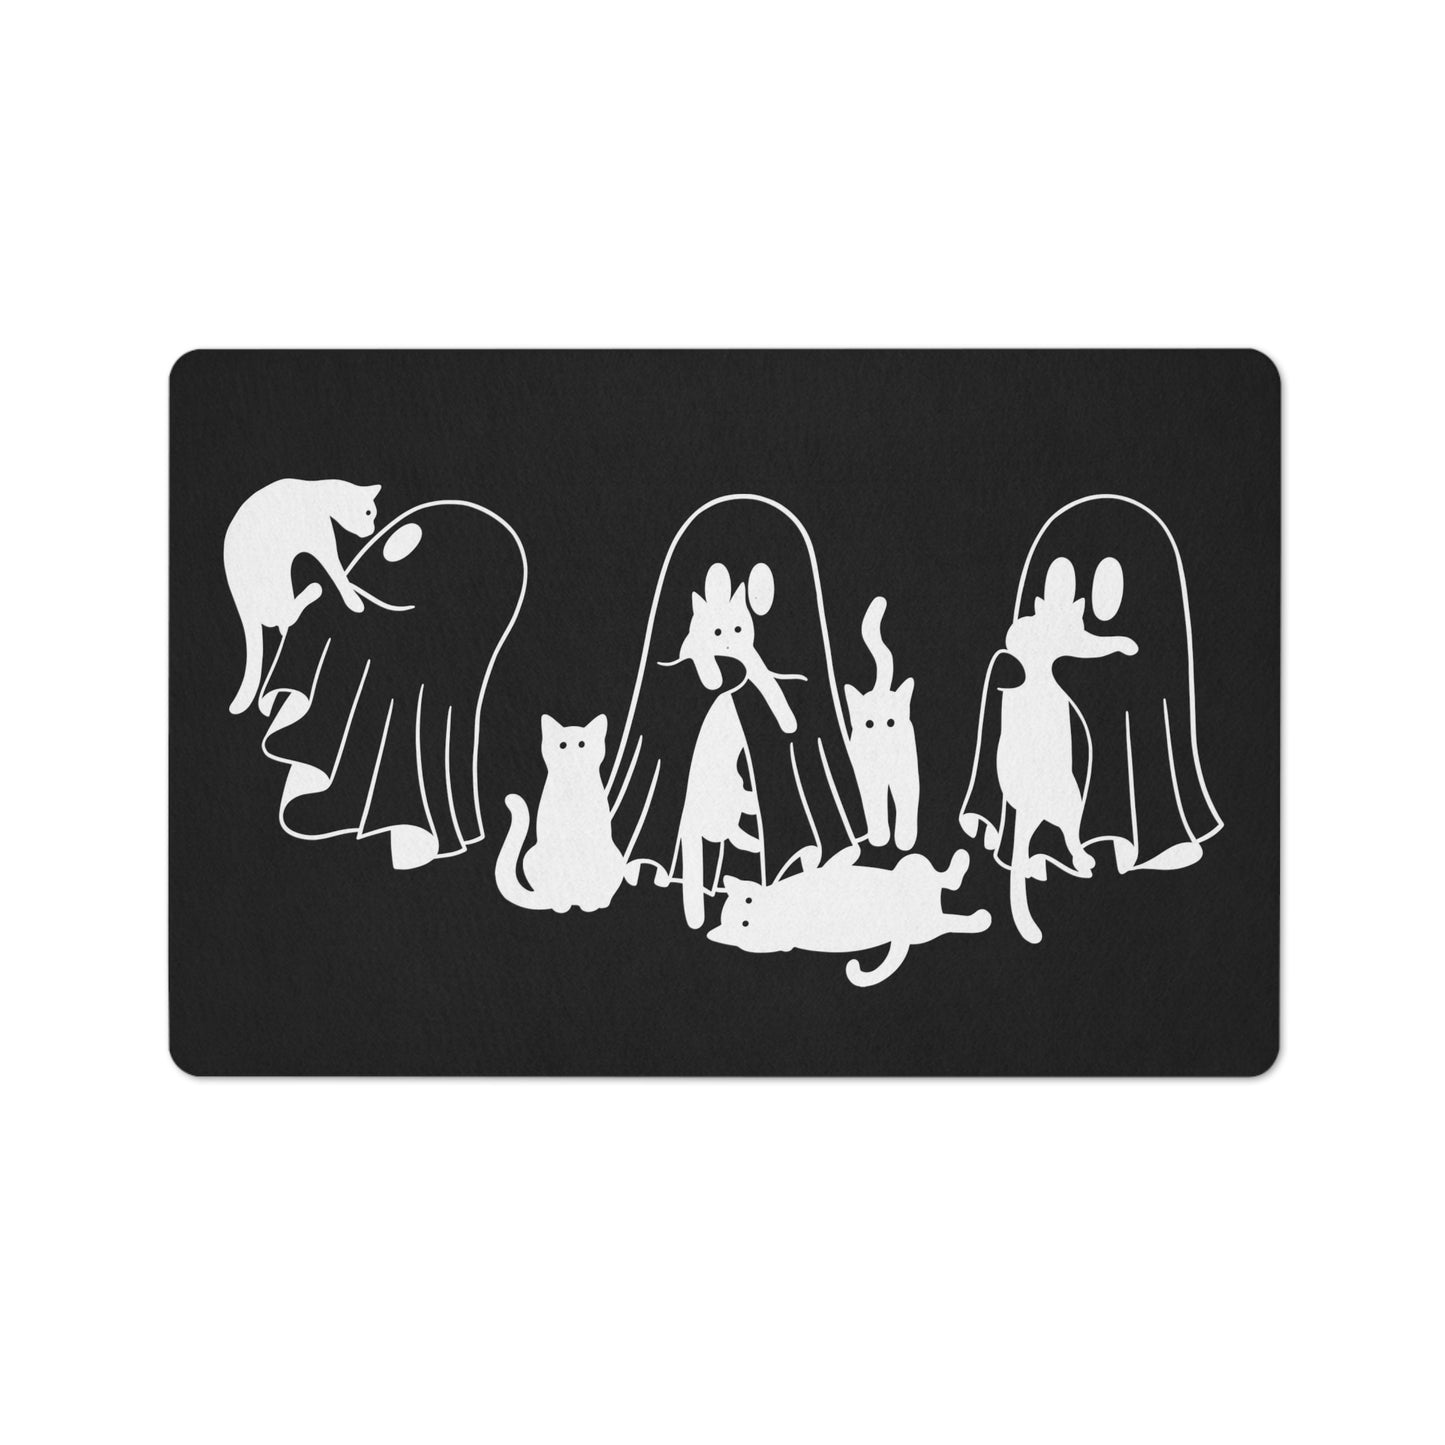 Ghost and cats floor mat, Cat Halloween flooring mat, Spooky Season doormat, Black Cats Ghost Halloween home decor, Halloween Home accessory